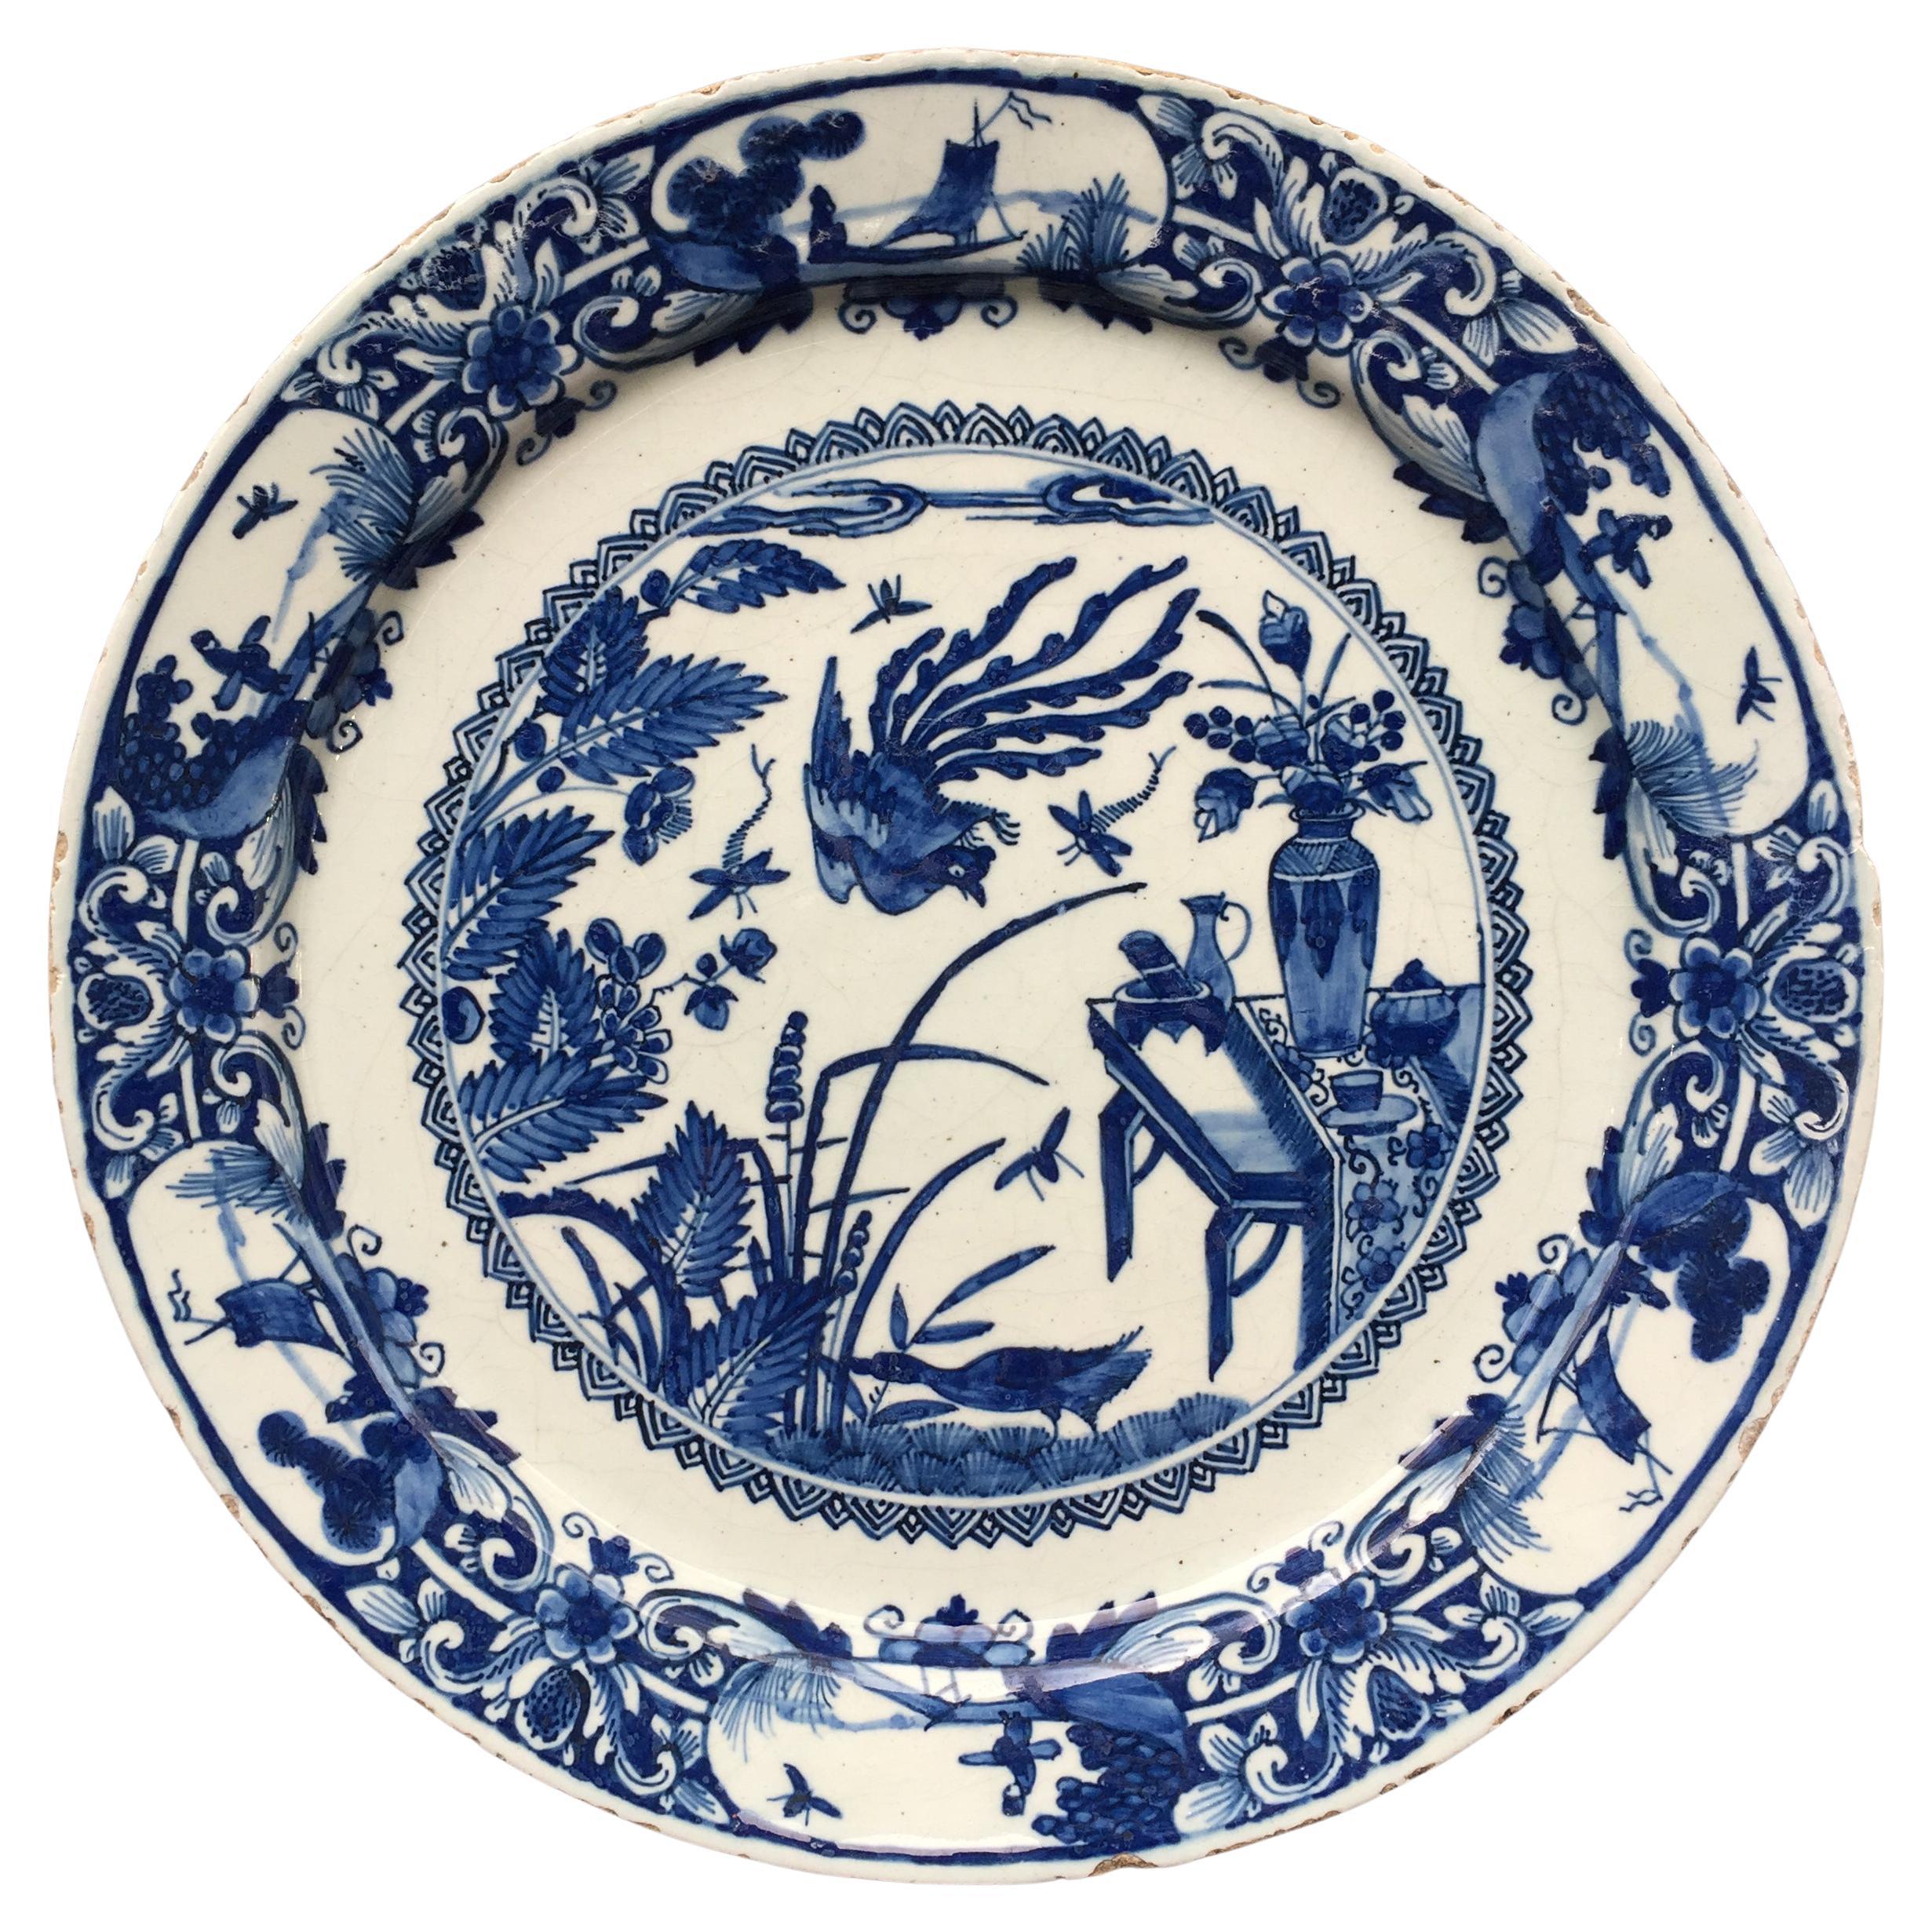 Assiette en faïence de Delft hollandaise avec motif de chinoiseries, 18ème siècle